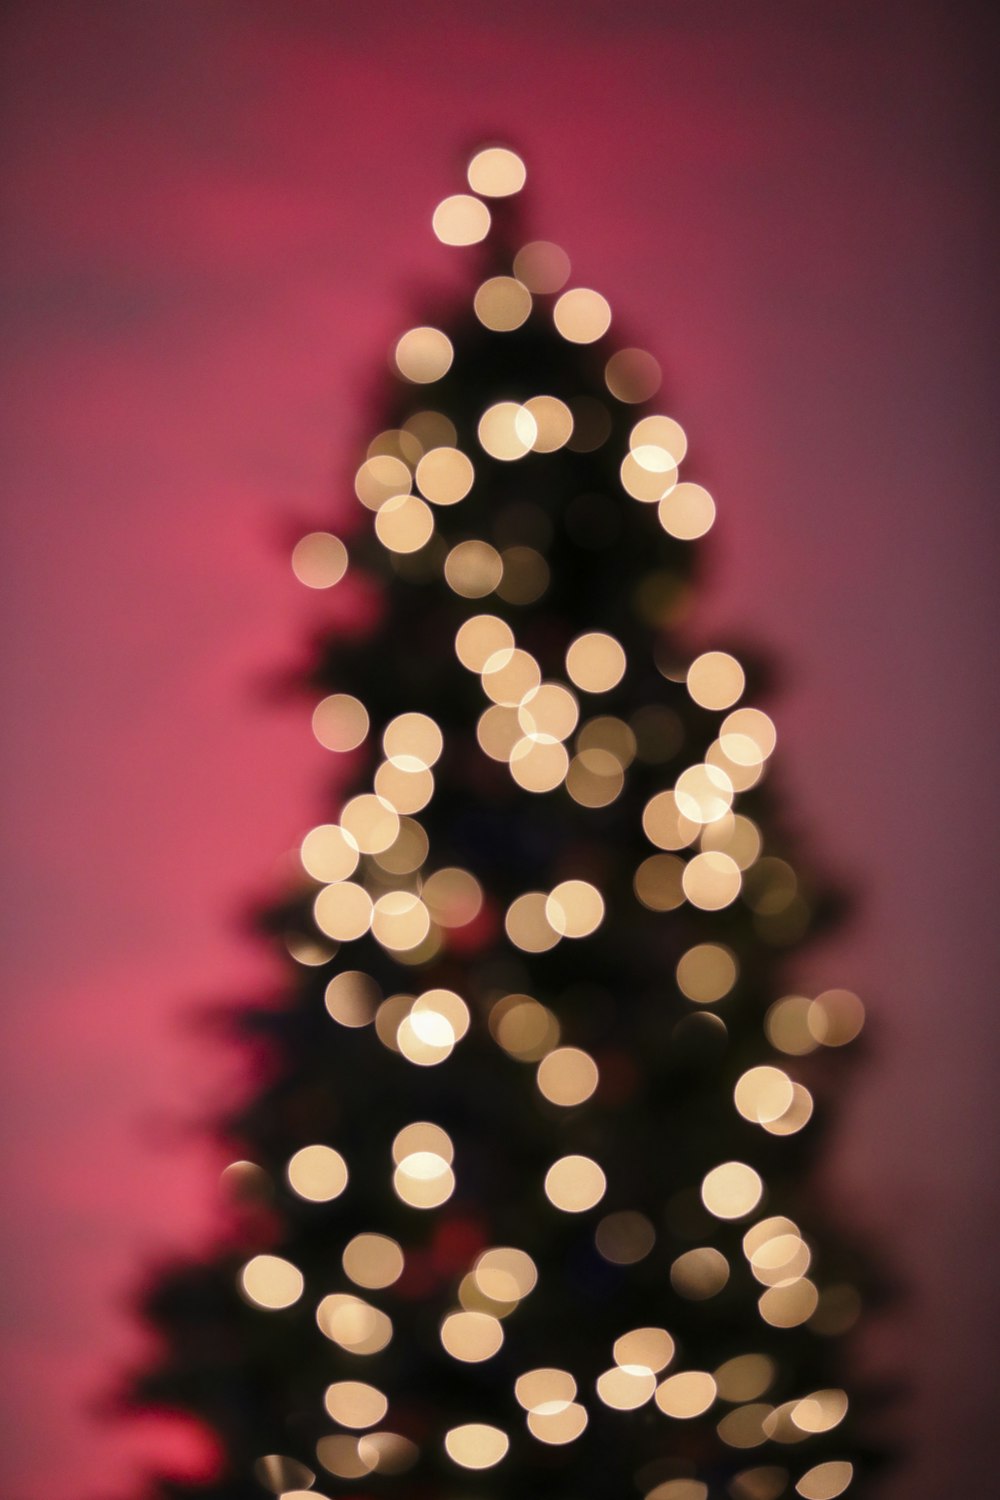 Une photo floue d’un sapin de Noël illuminé